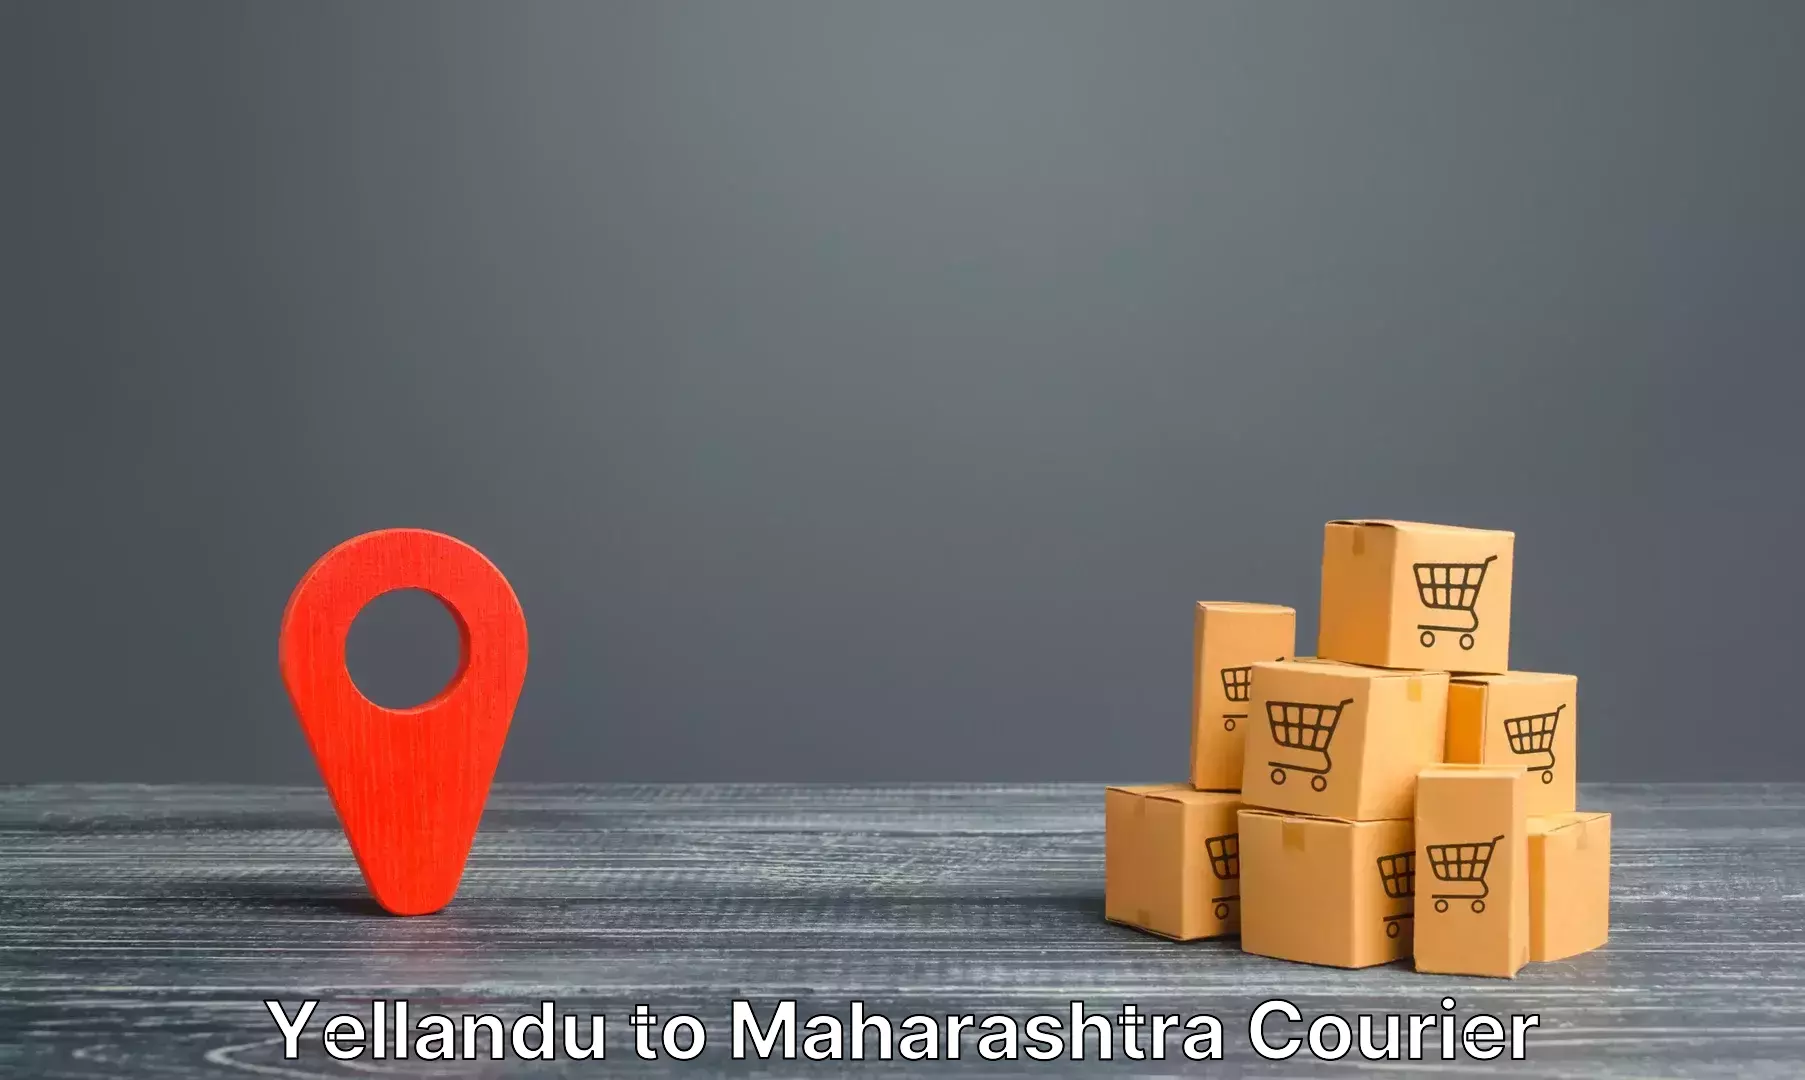 Luggage shipping service Yellandu to Maharashtra